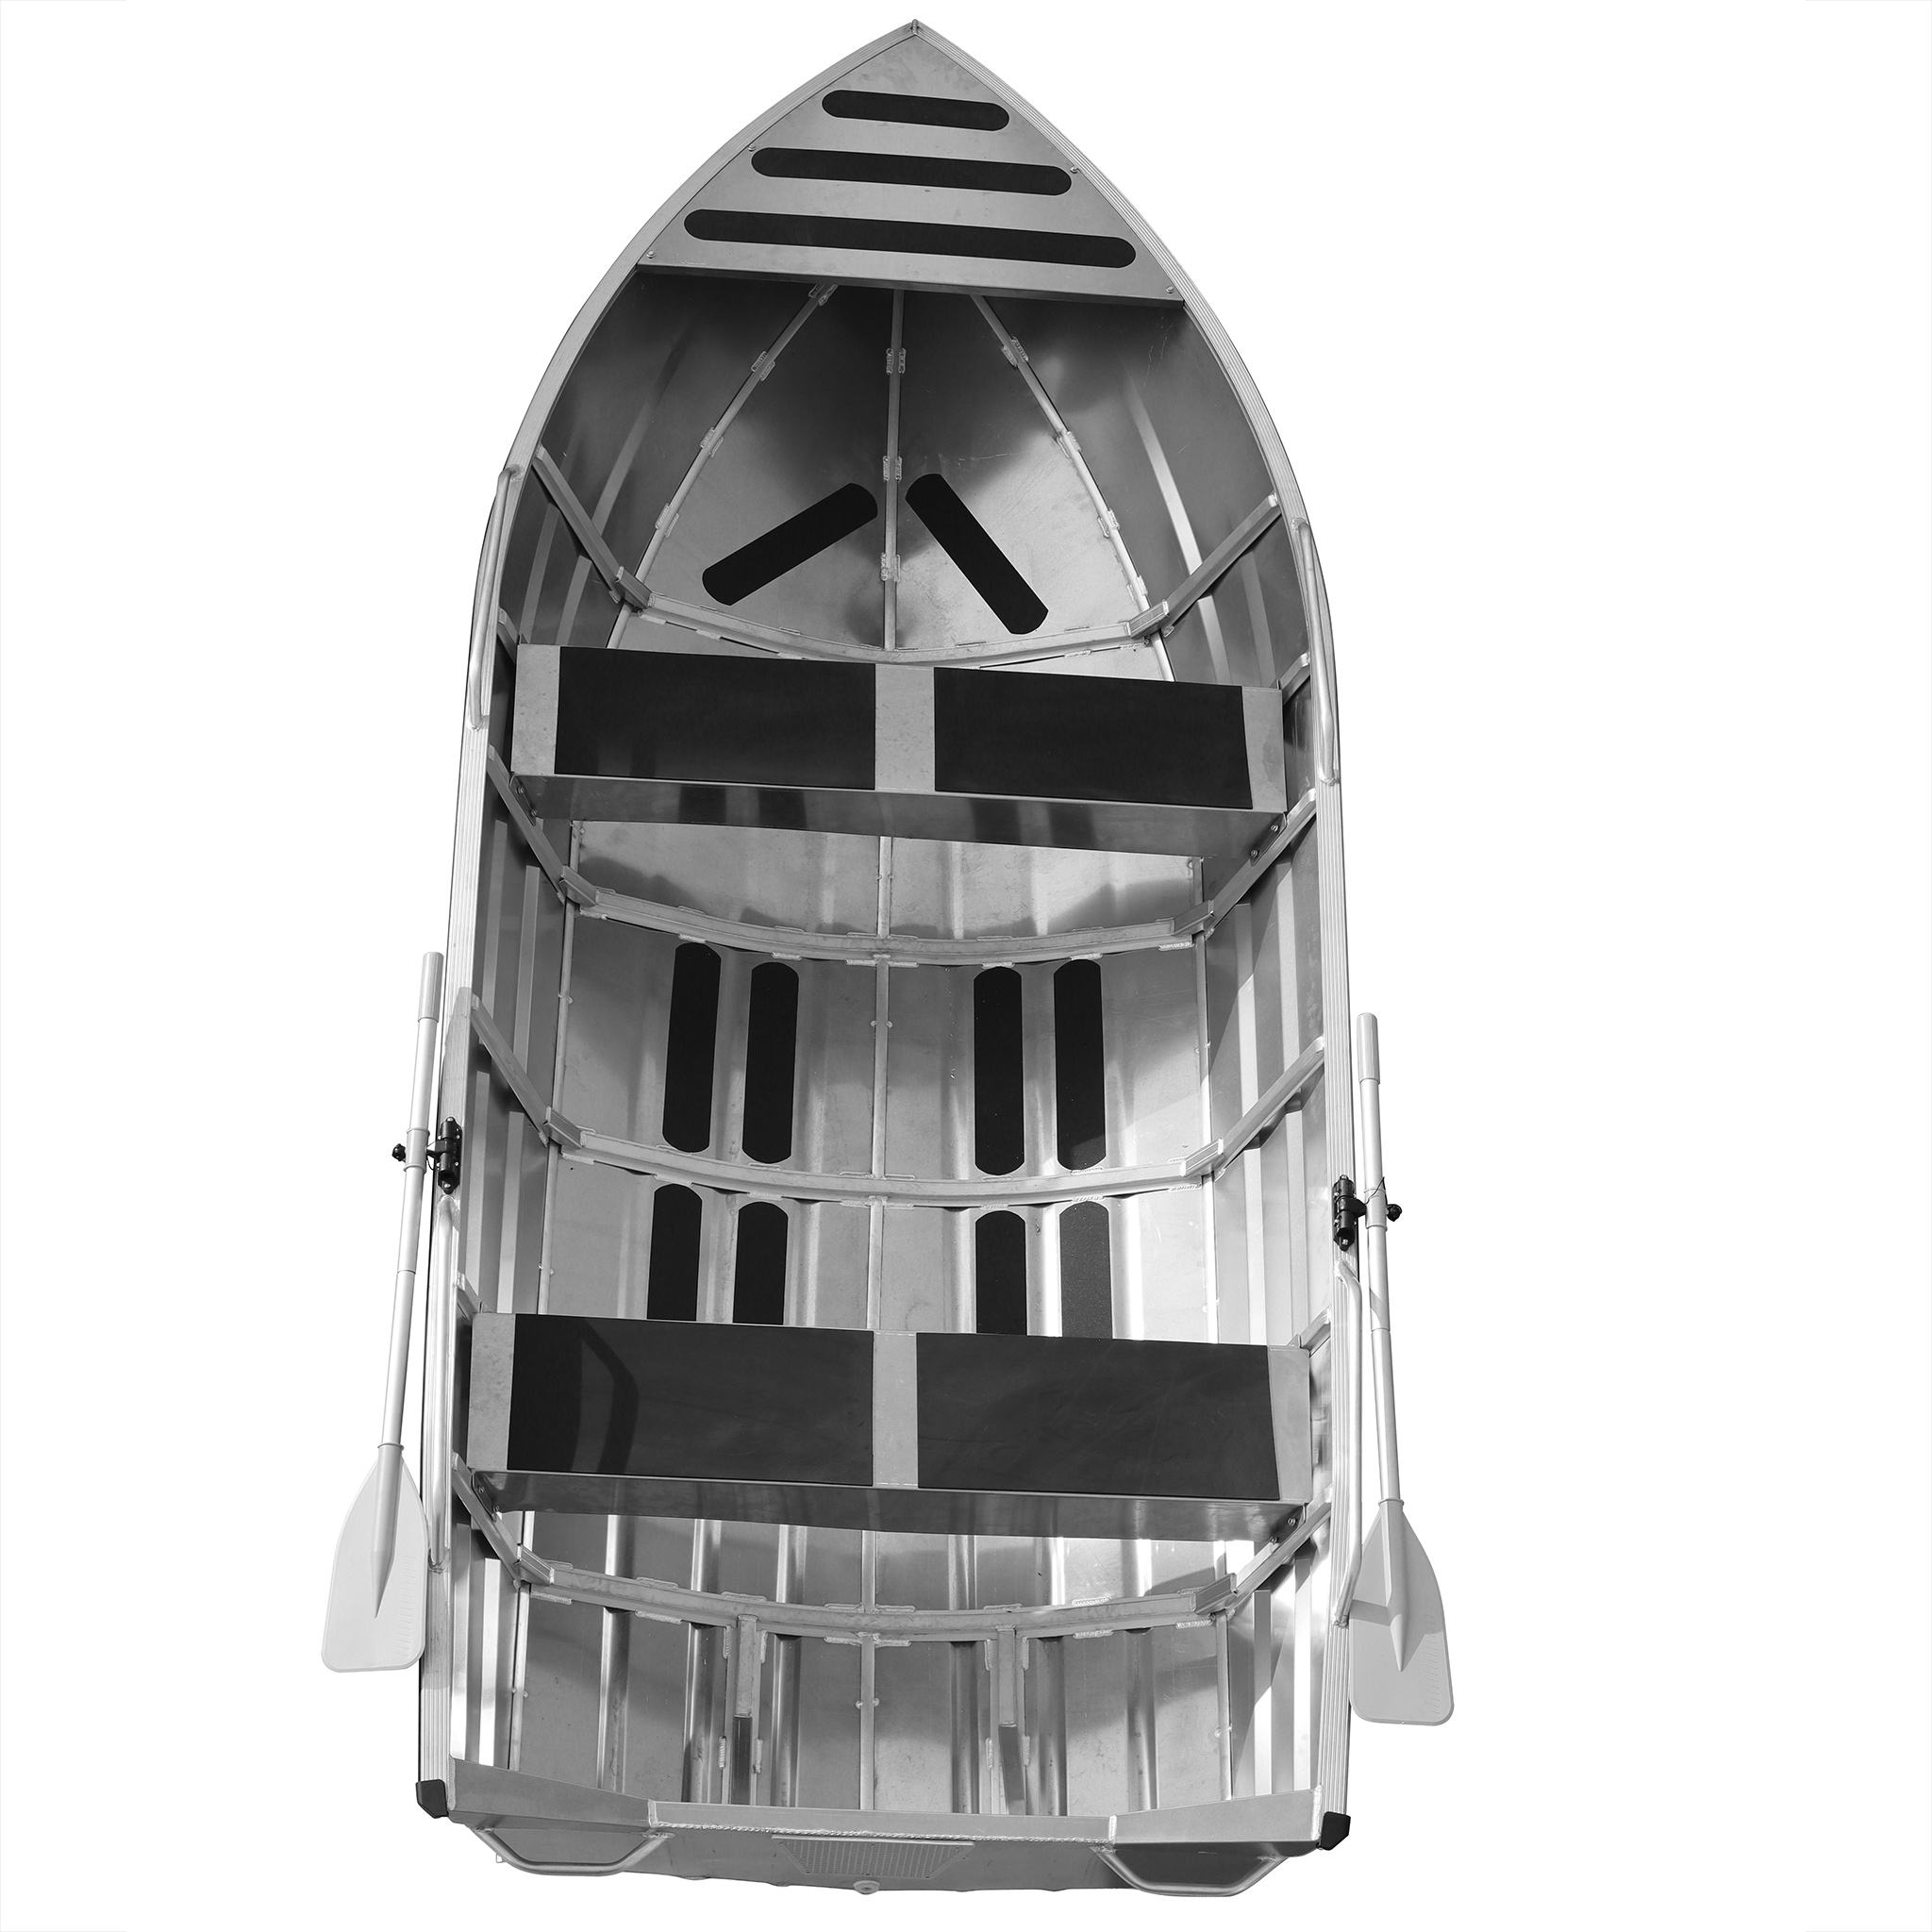 Aluminiumbåt 4,2m | Stor båt för 5 personer | 2mm skrovtjocklek | Lyfco